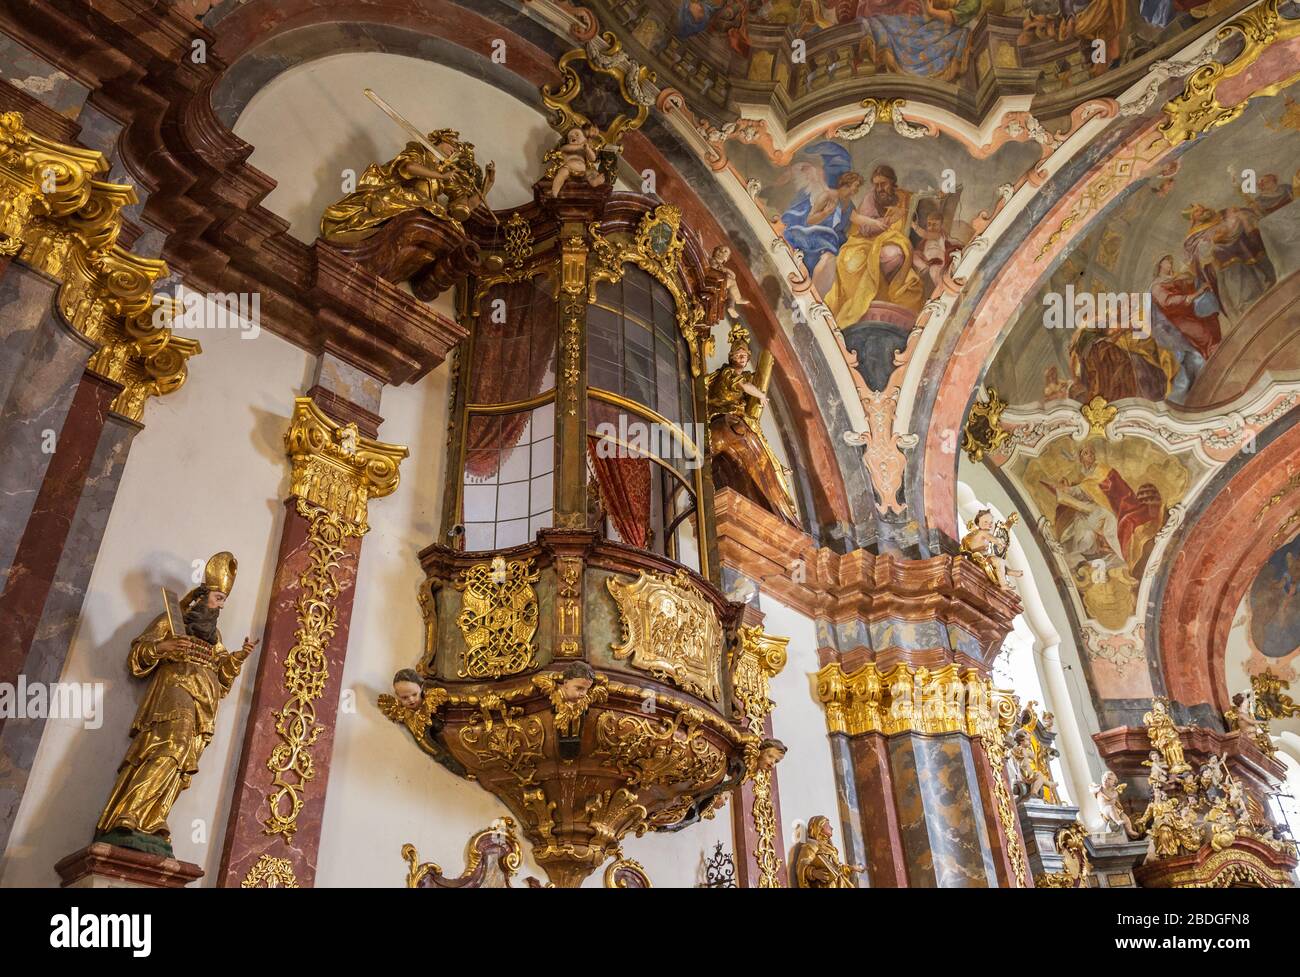 PRAGUE, RÉPUBLIQUE TCHÈQUE - 10 MARS 2020: Prague Loreta, intérieur de l'Église de la Nativité du Seigneur. Cathédrale catholique ornée de déco sculptée Banque D'Images